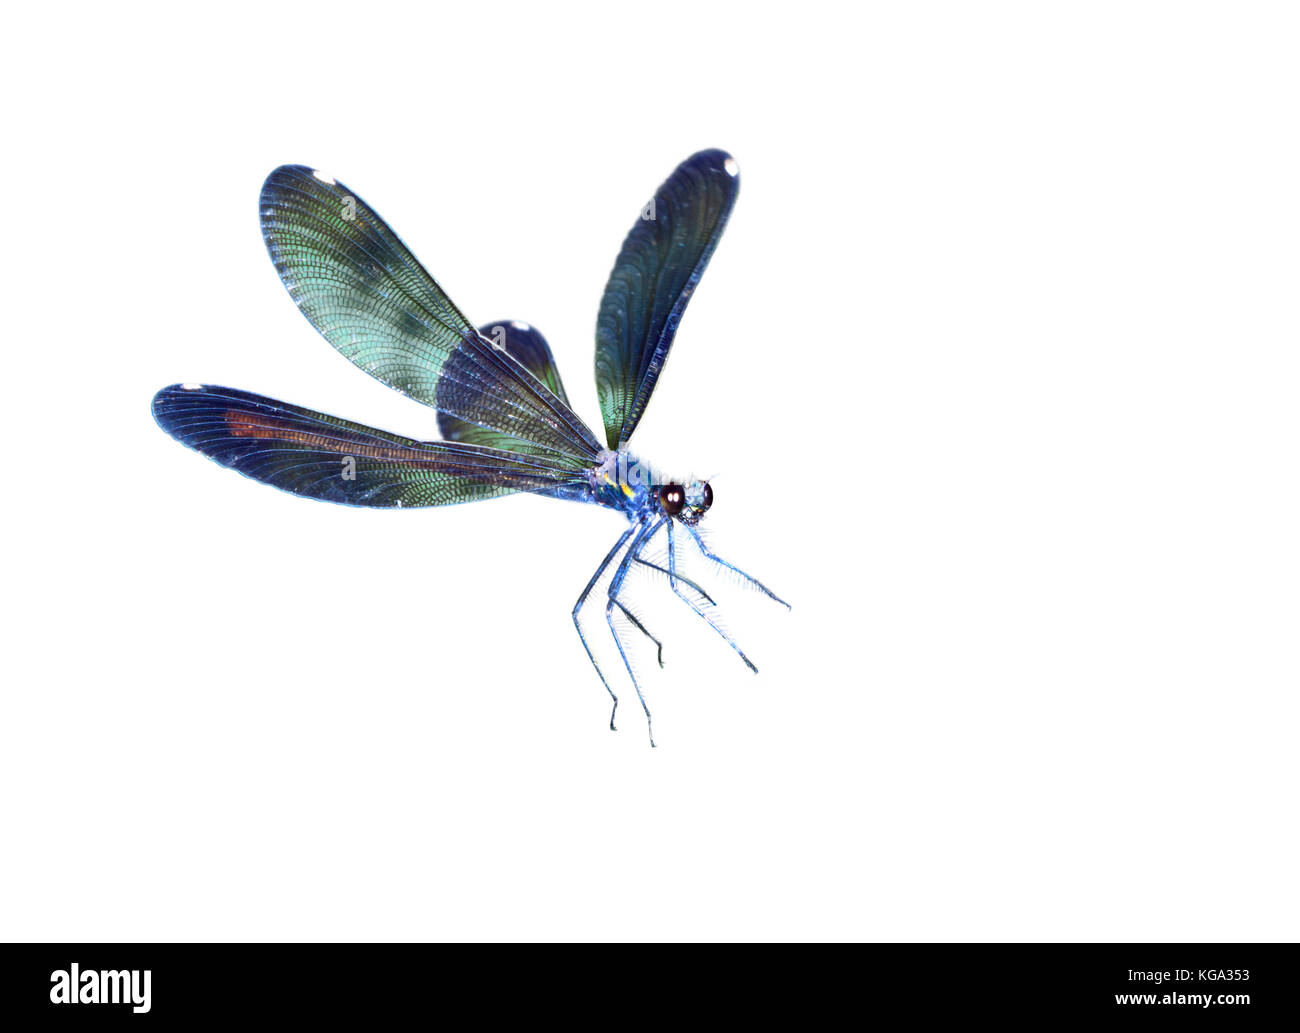 Ebony jewelwing (Calopteryx maculata) flying, isolated on white background. Stock Photo